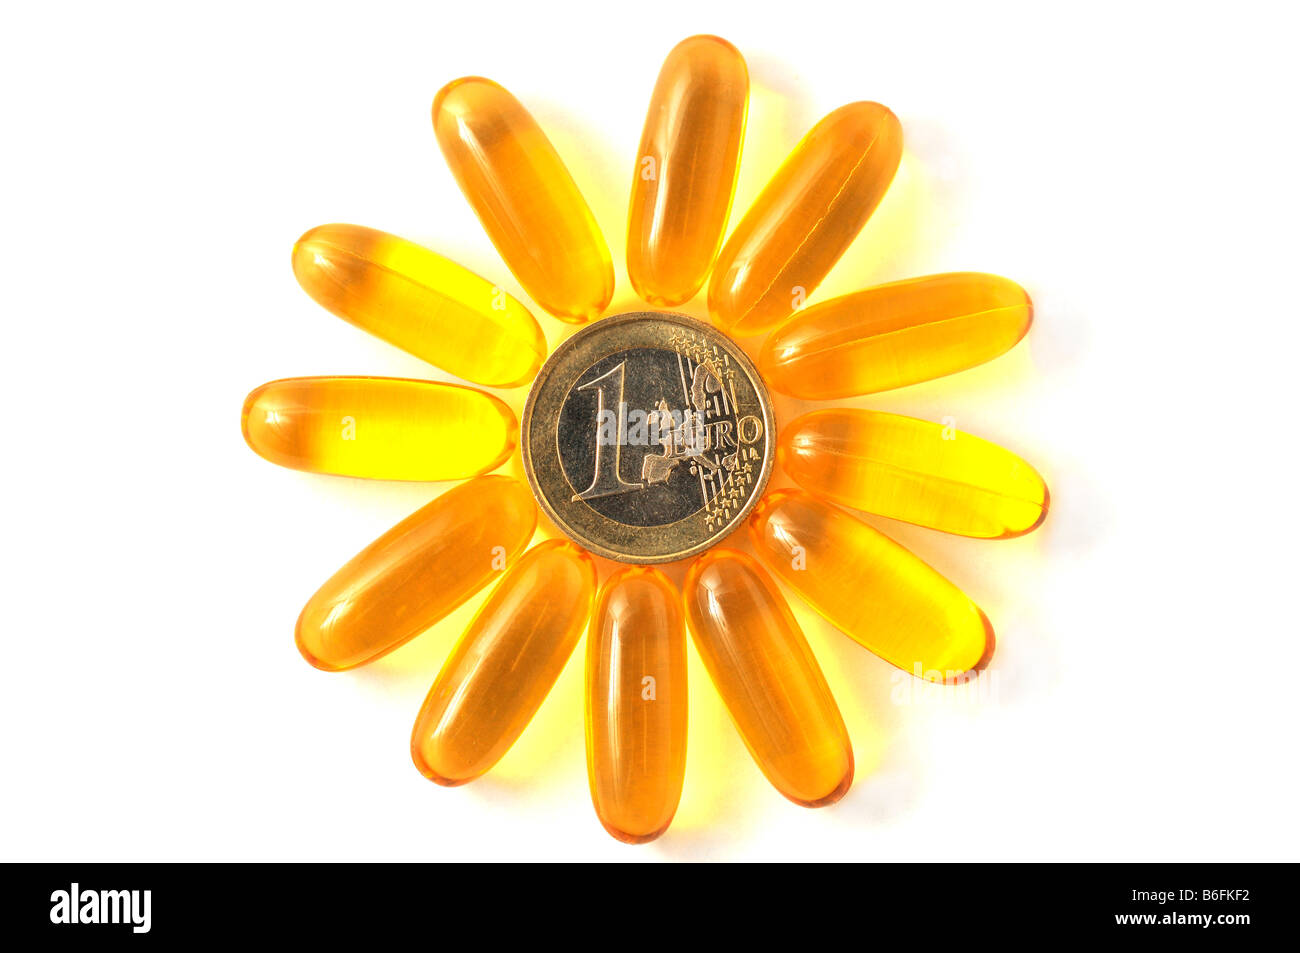 Medicina pastillas, cápsulas formando una flor en un anillo alrededor de una moneda Foto de stock